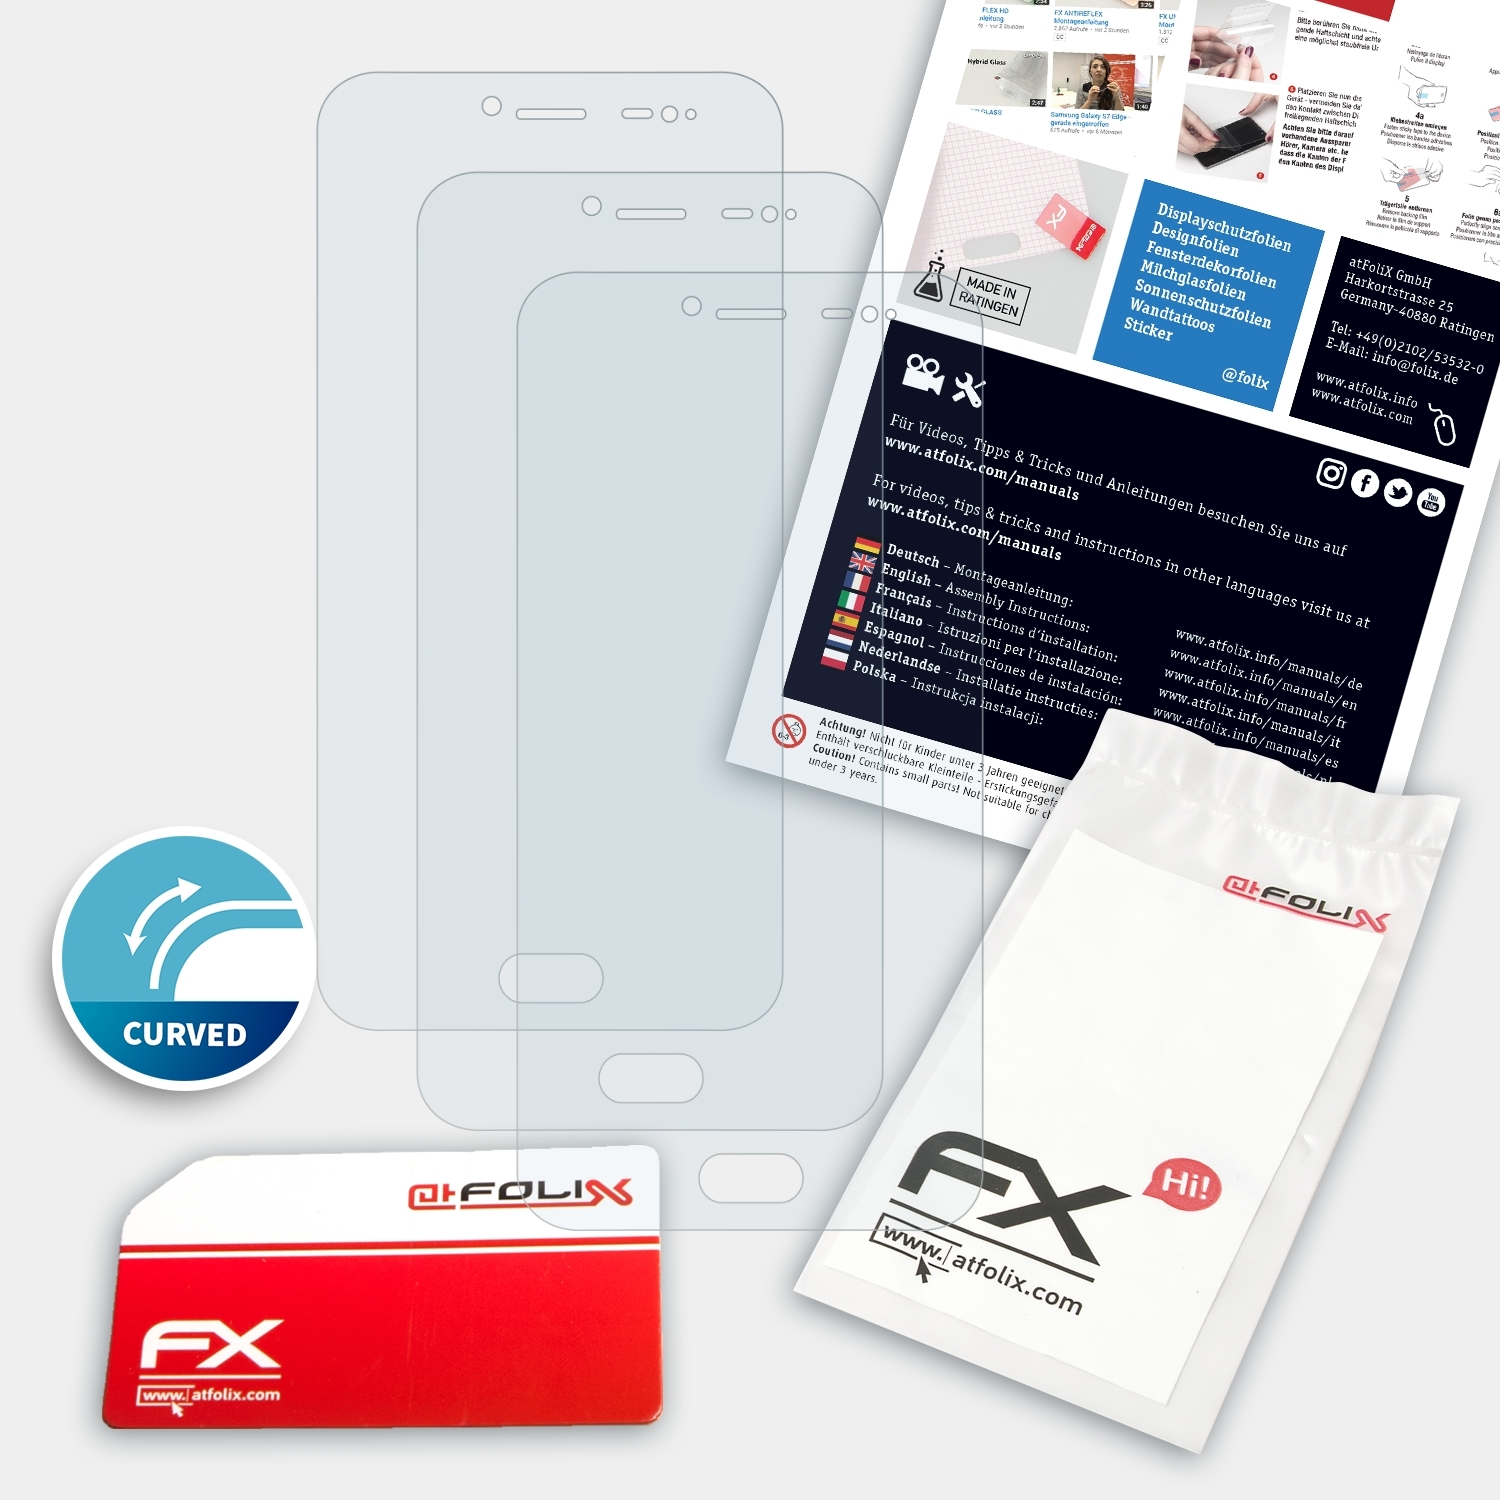 Ulefone T1) ATFOLIX FX-ActiFleX 3x Displayschutz(für